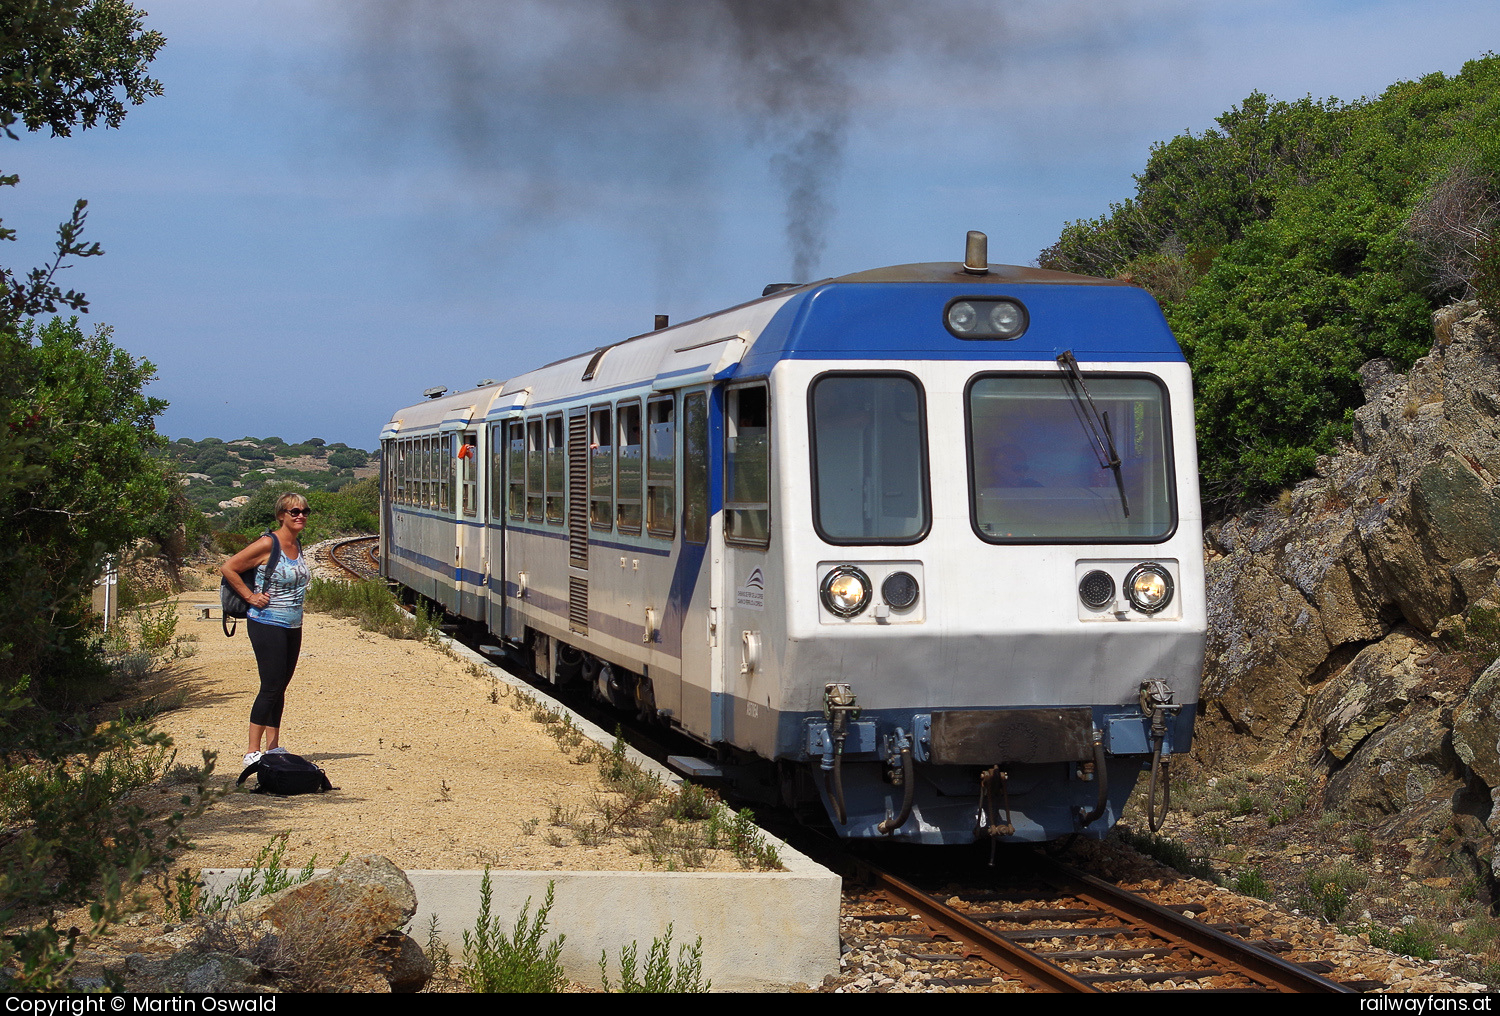 Chemins de fer de la Corse (CFC) X97 054 in Ghjorghju - Von dieser Station führt ein kurzer Fußweg an den Strand.   Railwayfans